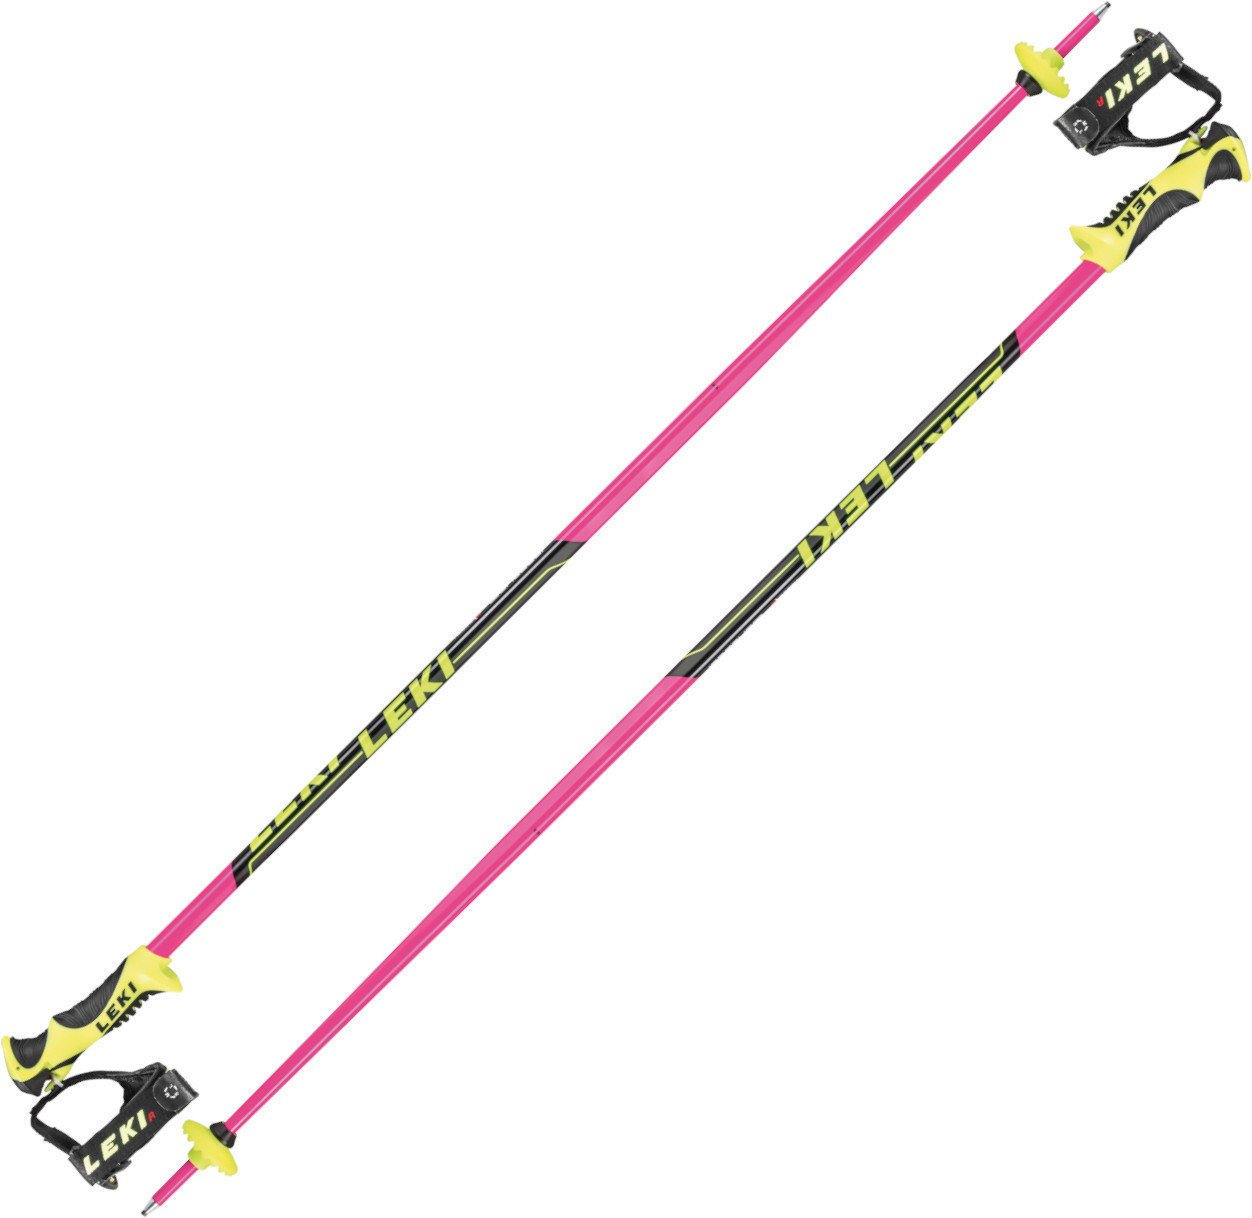 Ski Poles Leki Worldcup Lite SL Pink/Black/White/Yellow 120 cm Ski Poles